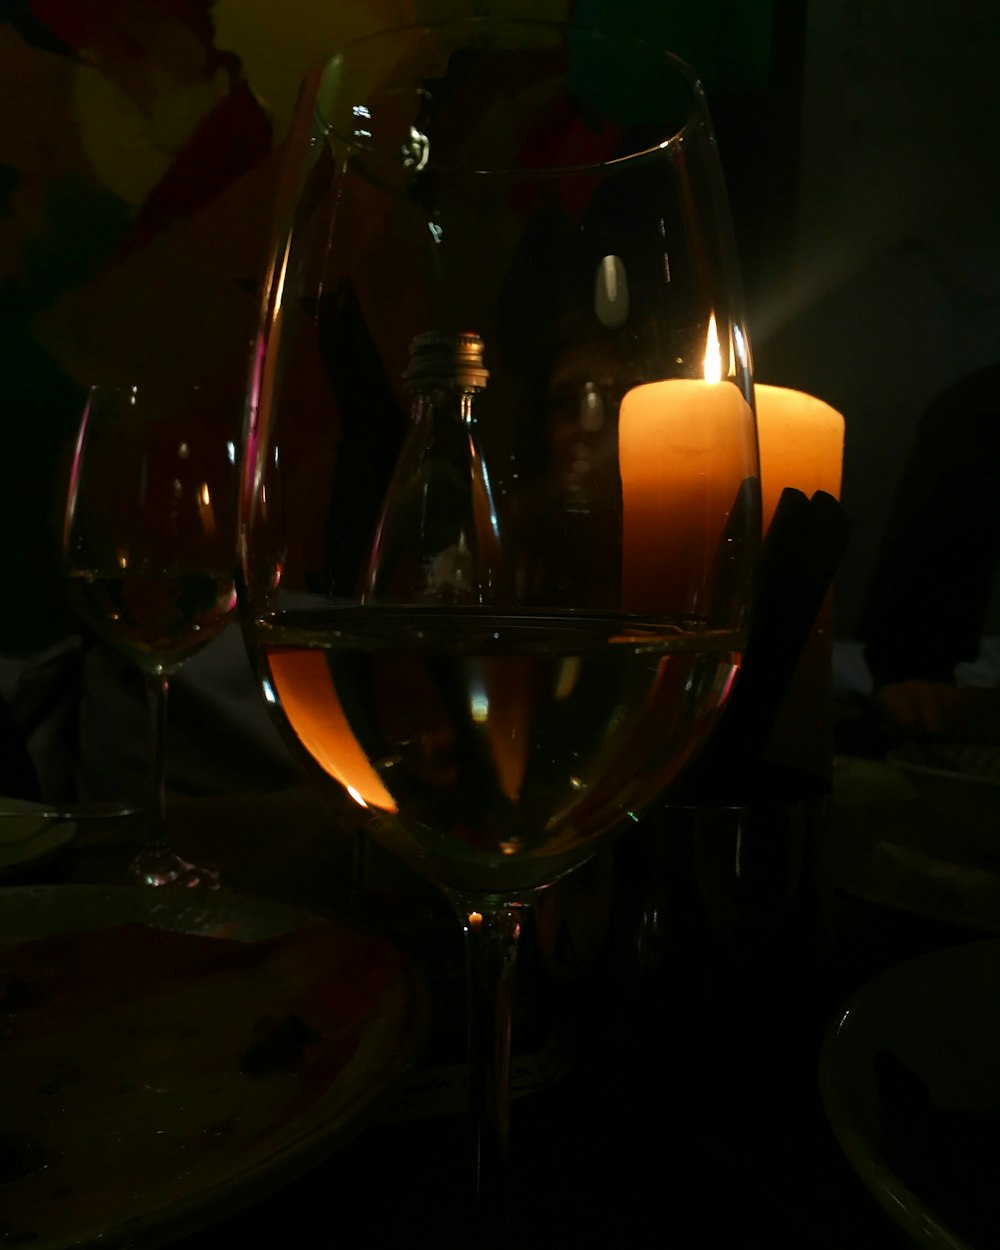 vin blanc dans un verre à vin près de bougies de pilier jaune allumées